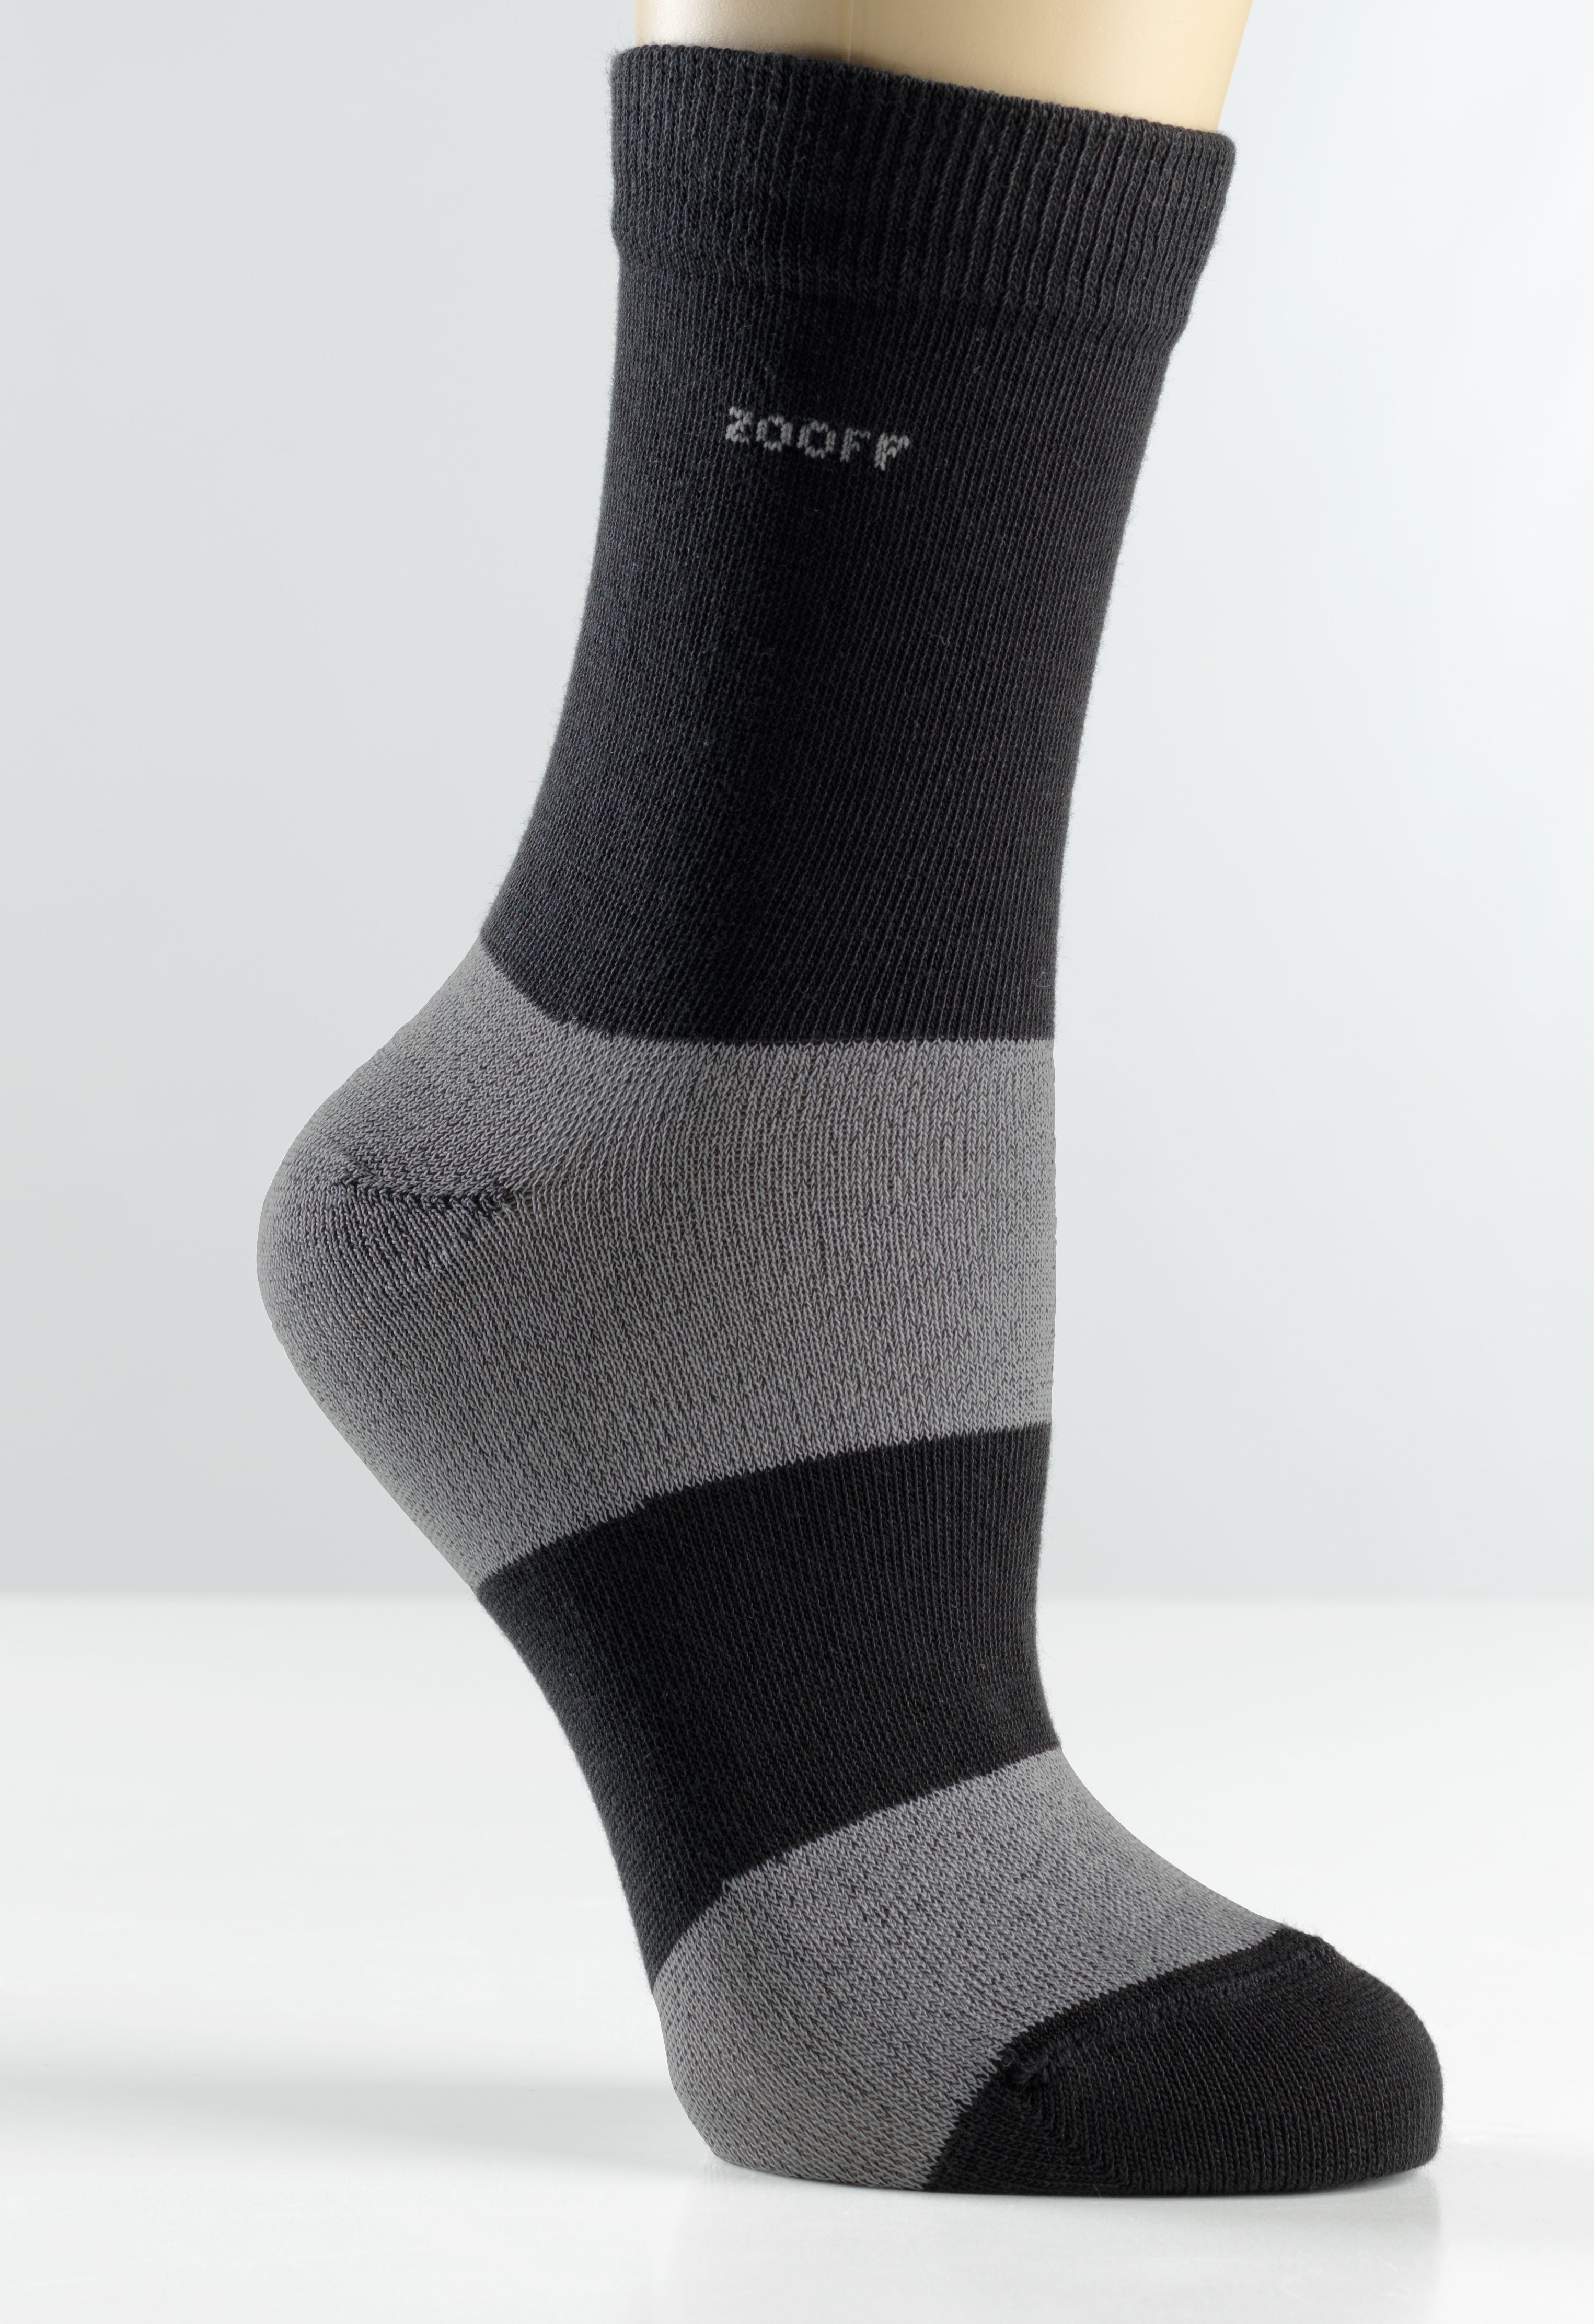 Zooff Socks zwart grijs credit Zooff Socks